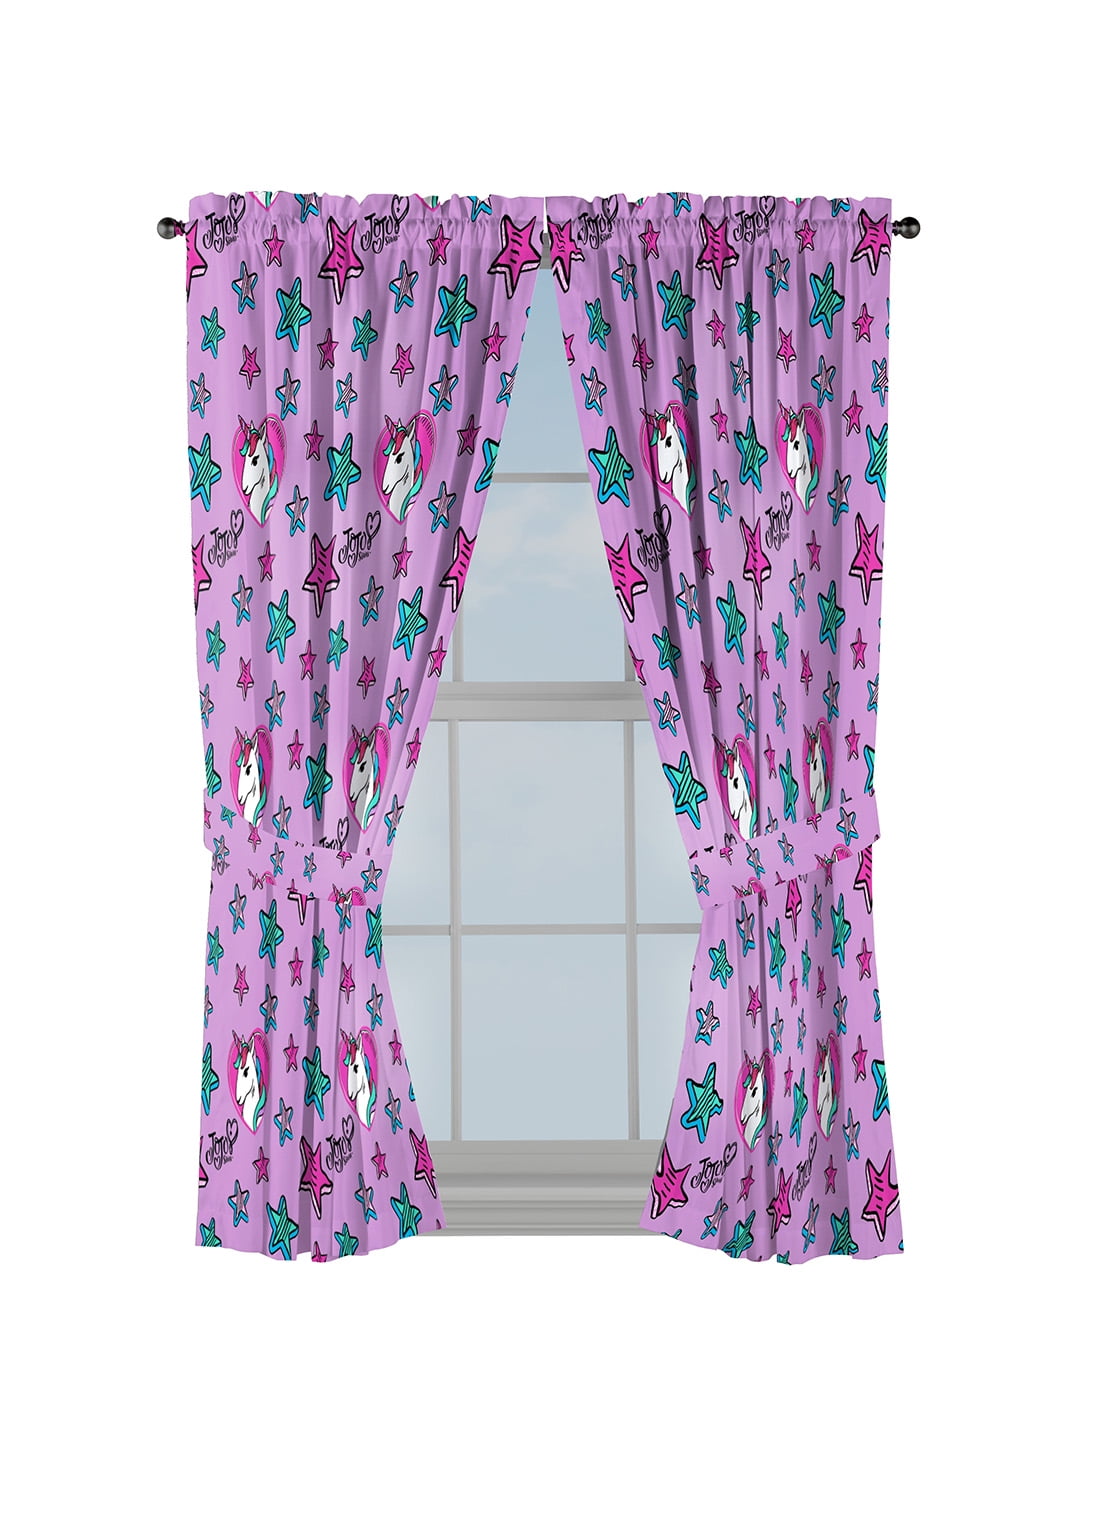 82" x 63" LOL Surprise Details about   Franco Kids Room Window Curtains Drapes Set 